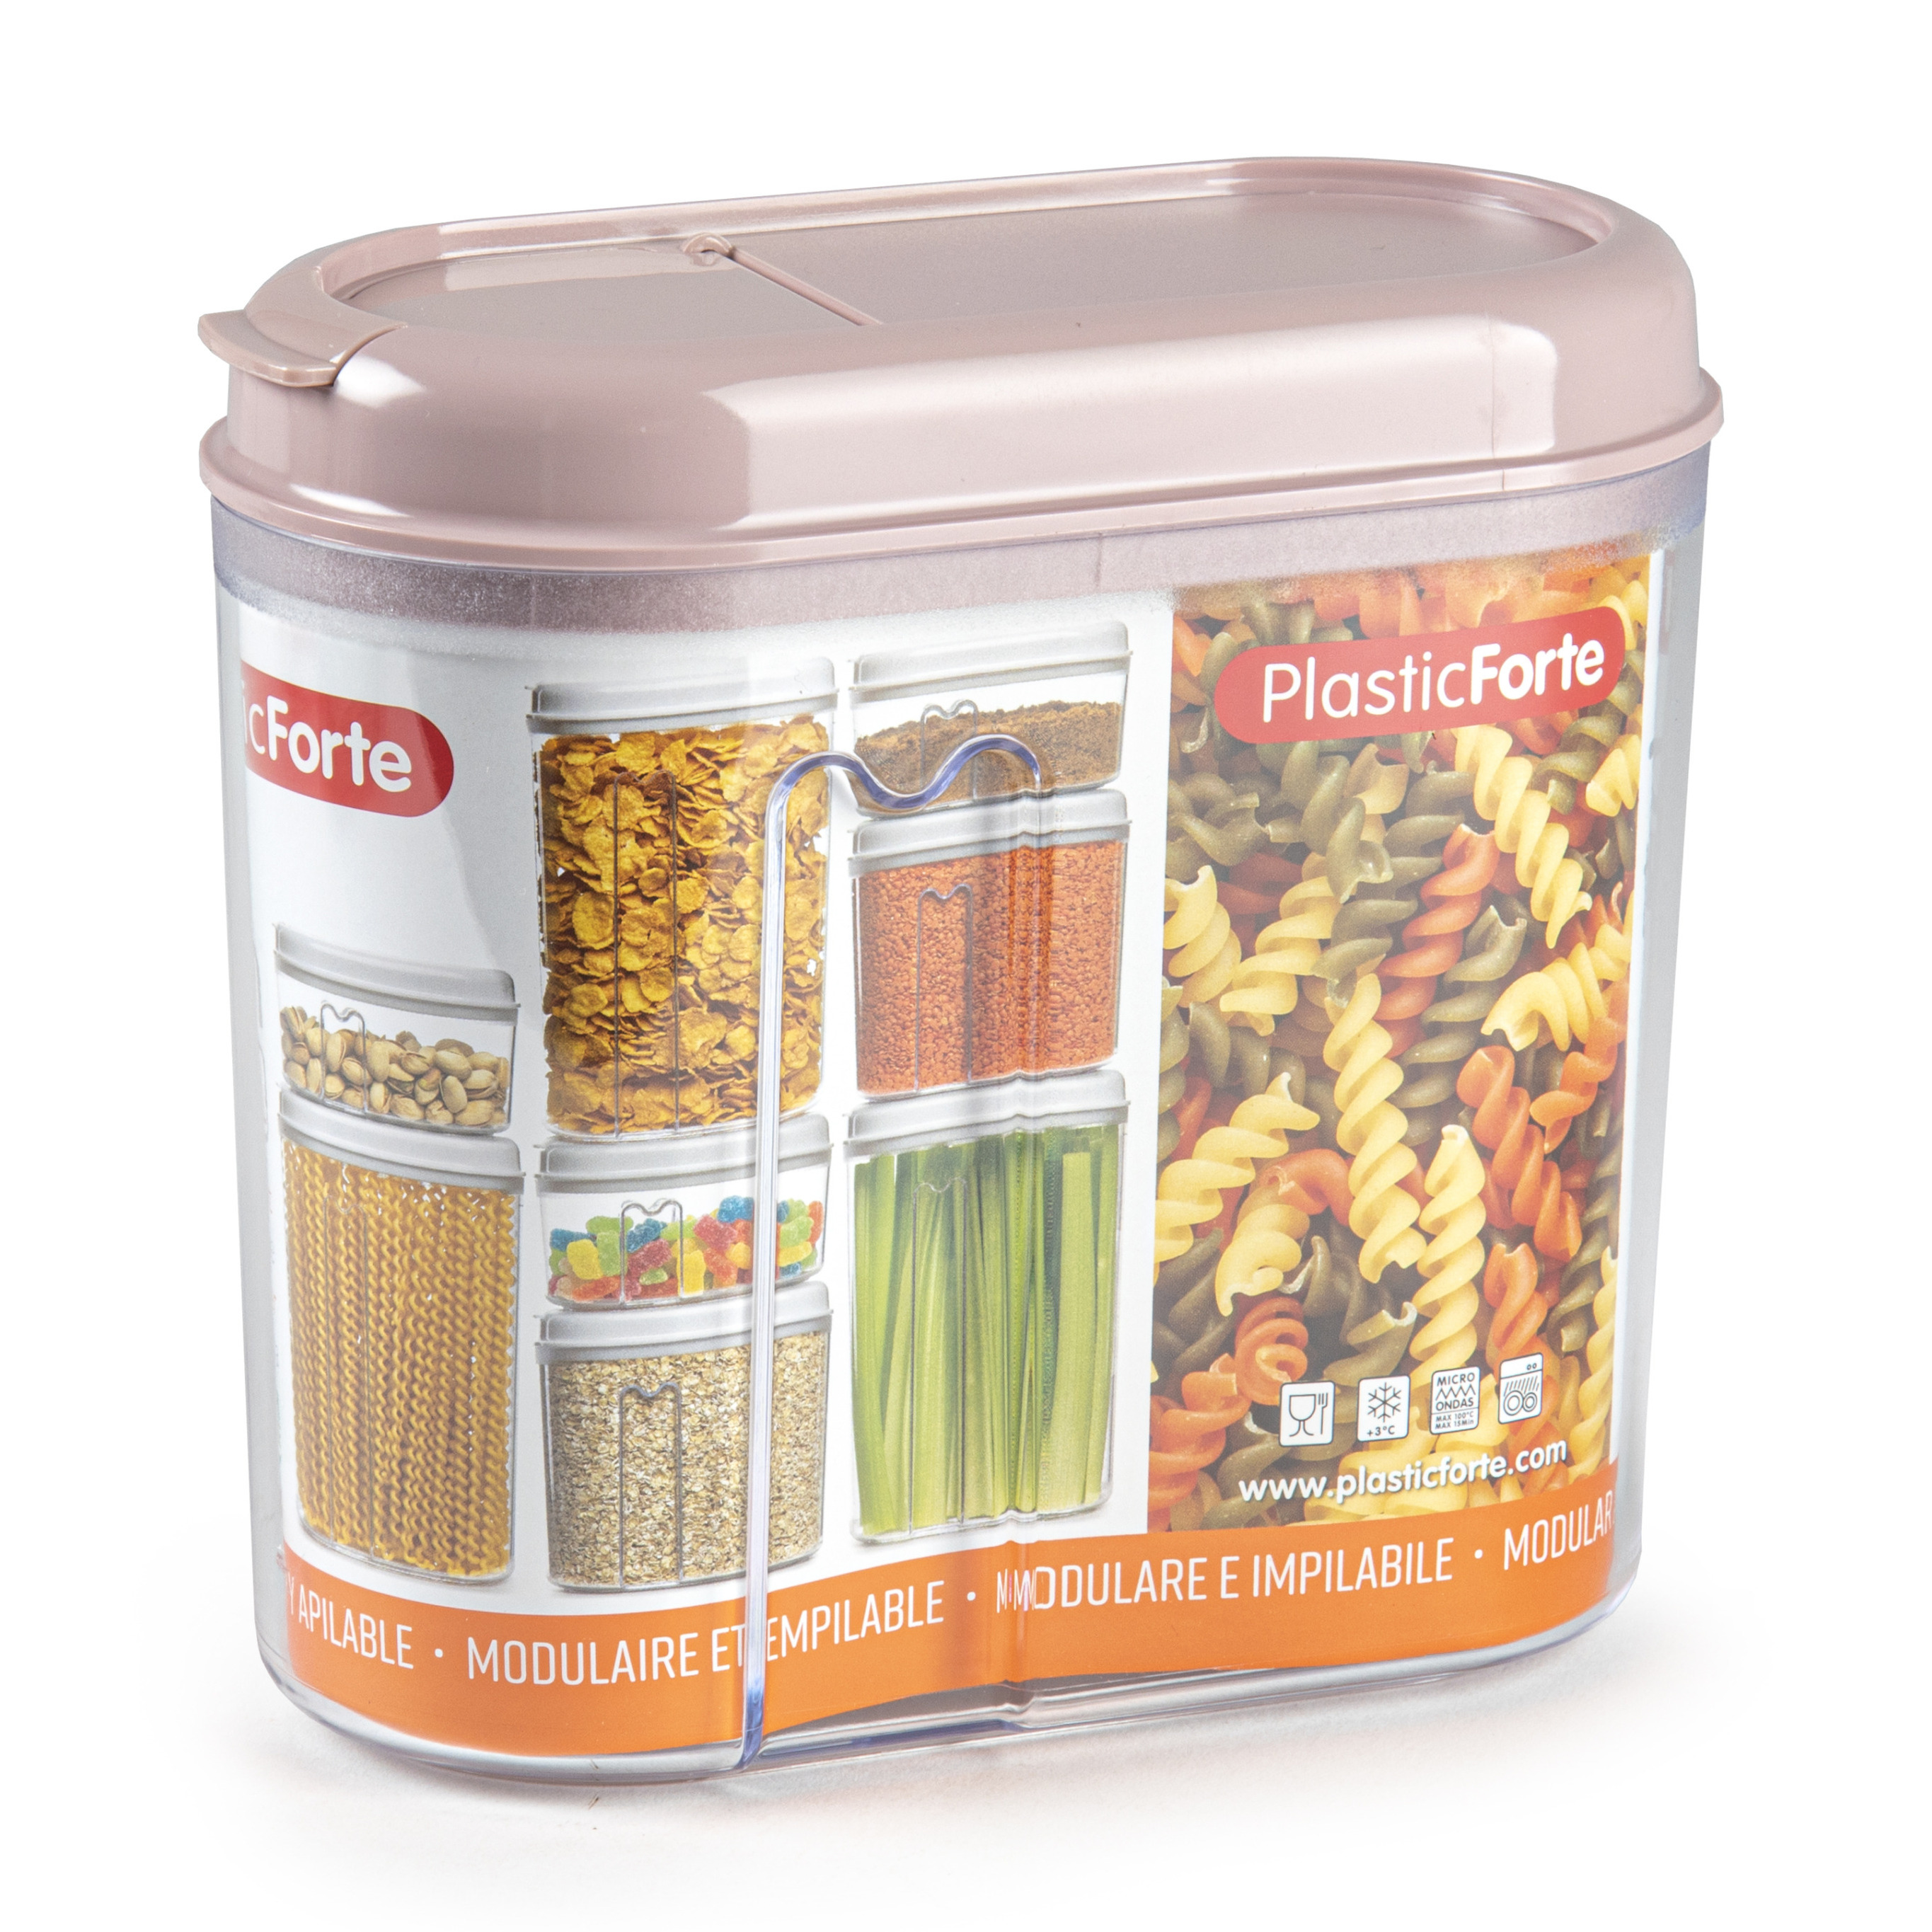 PlasticForte Voedselcontainer strooibus - lichtroze - 1000 ml - kunststof - 15 x 8 x 14 cm - voorraadpot -